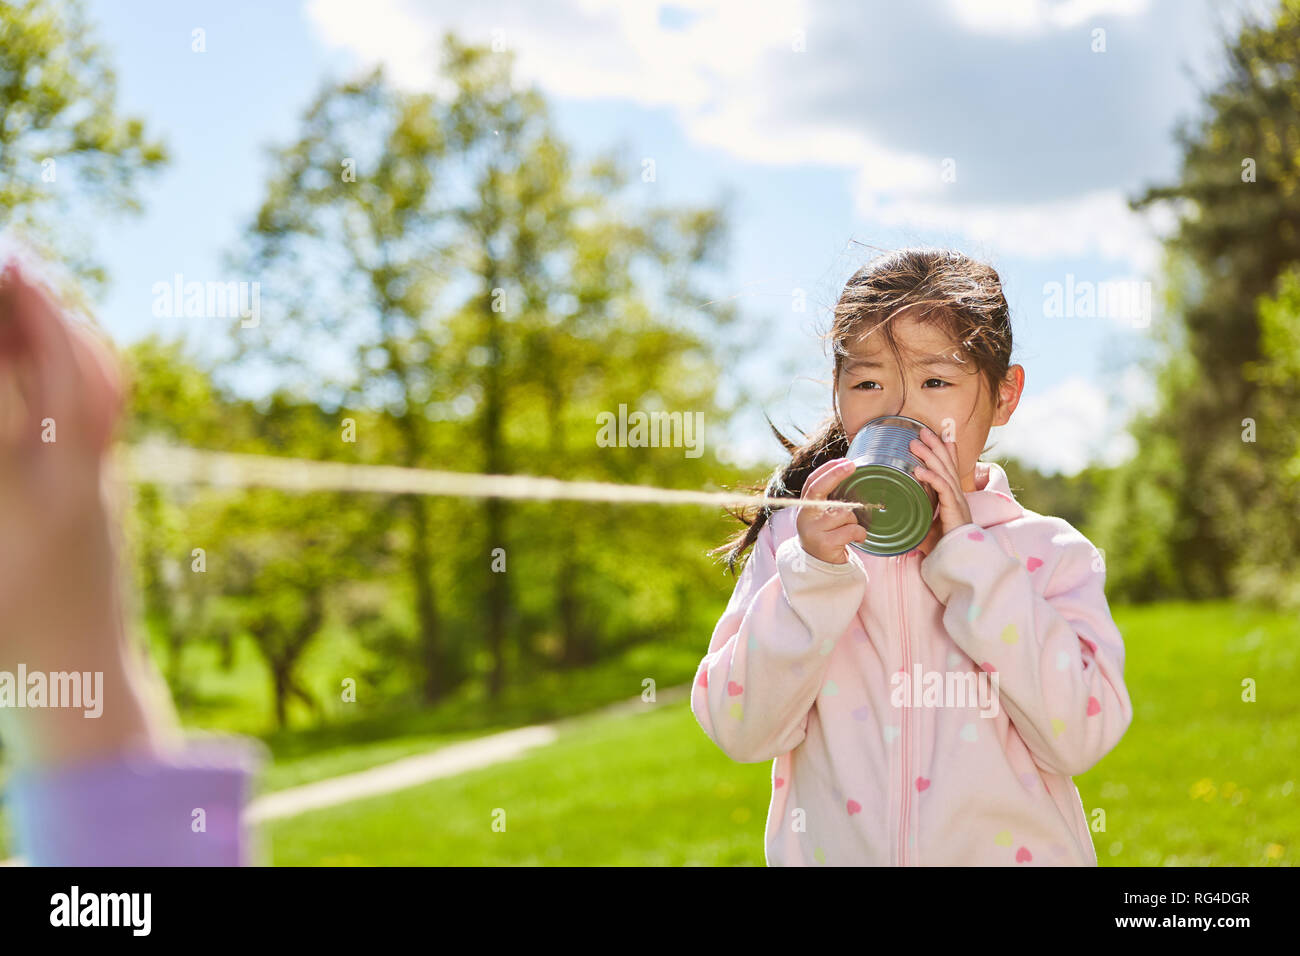 Asiatische Mädchen spricht in einem können Telefon mit Schnur beim Spielen im Park Stockfoto